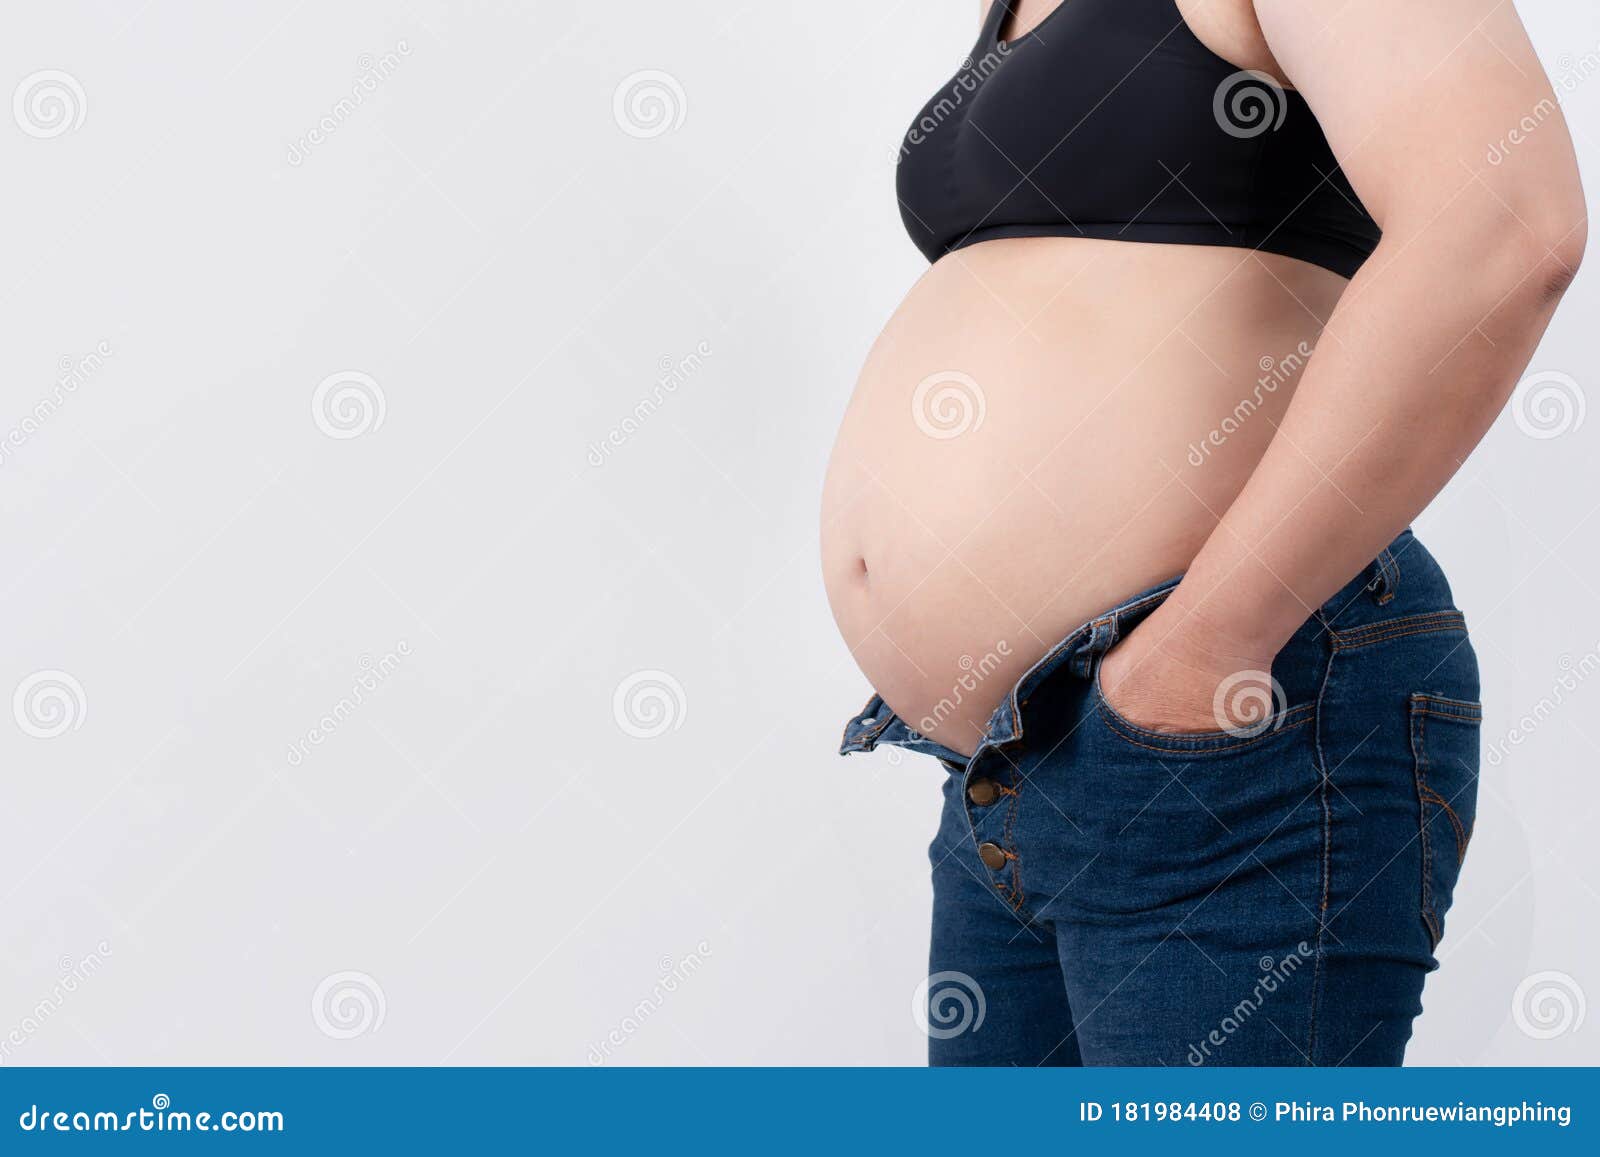 Closeup pregnant